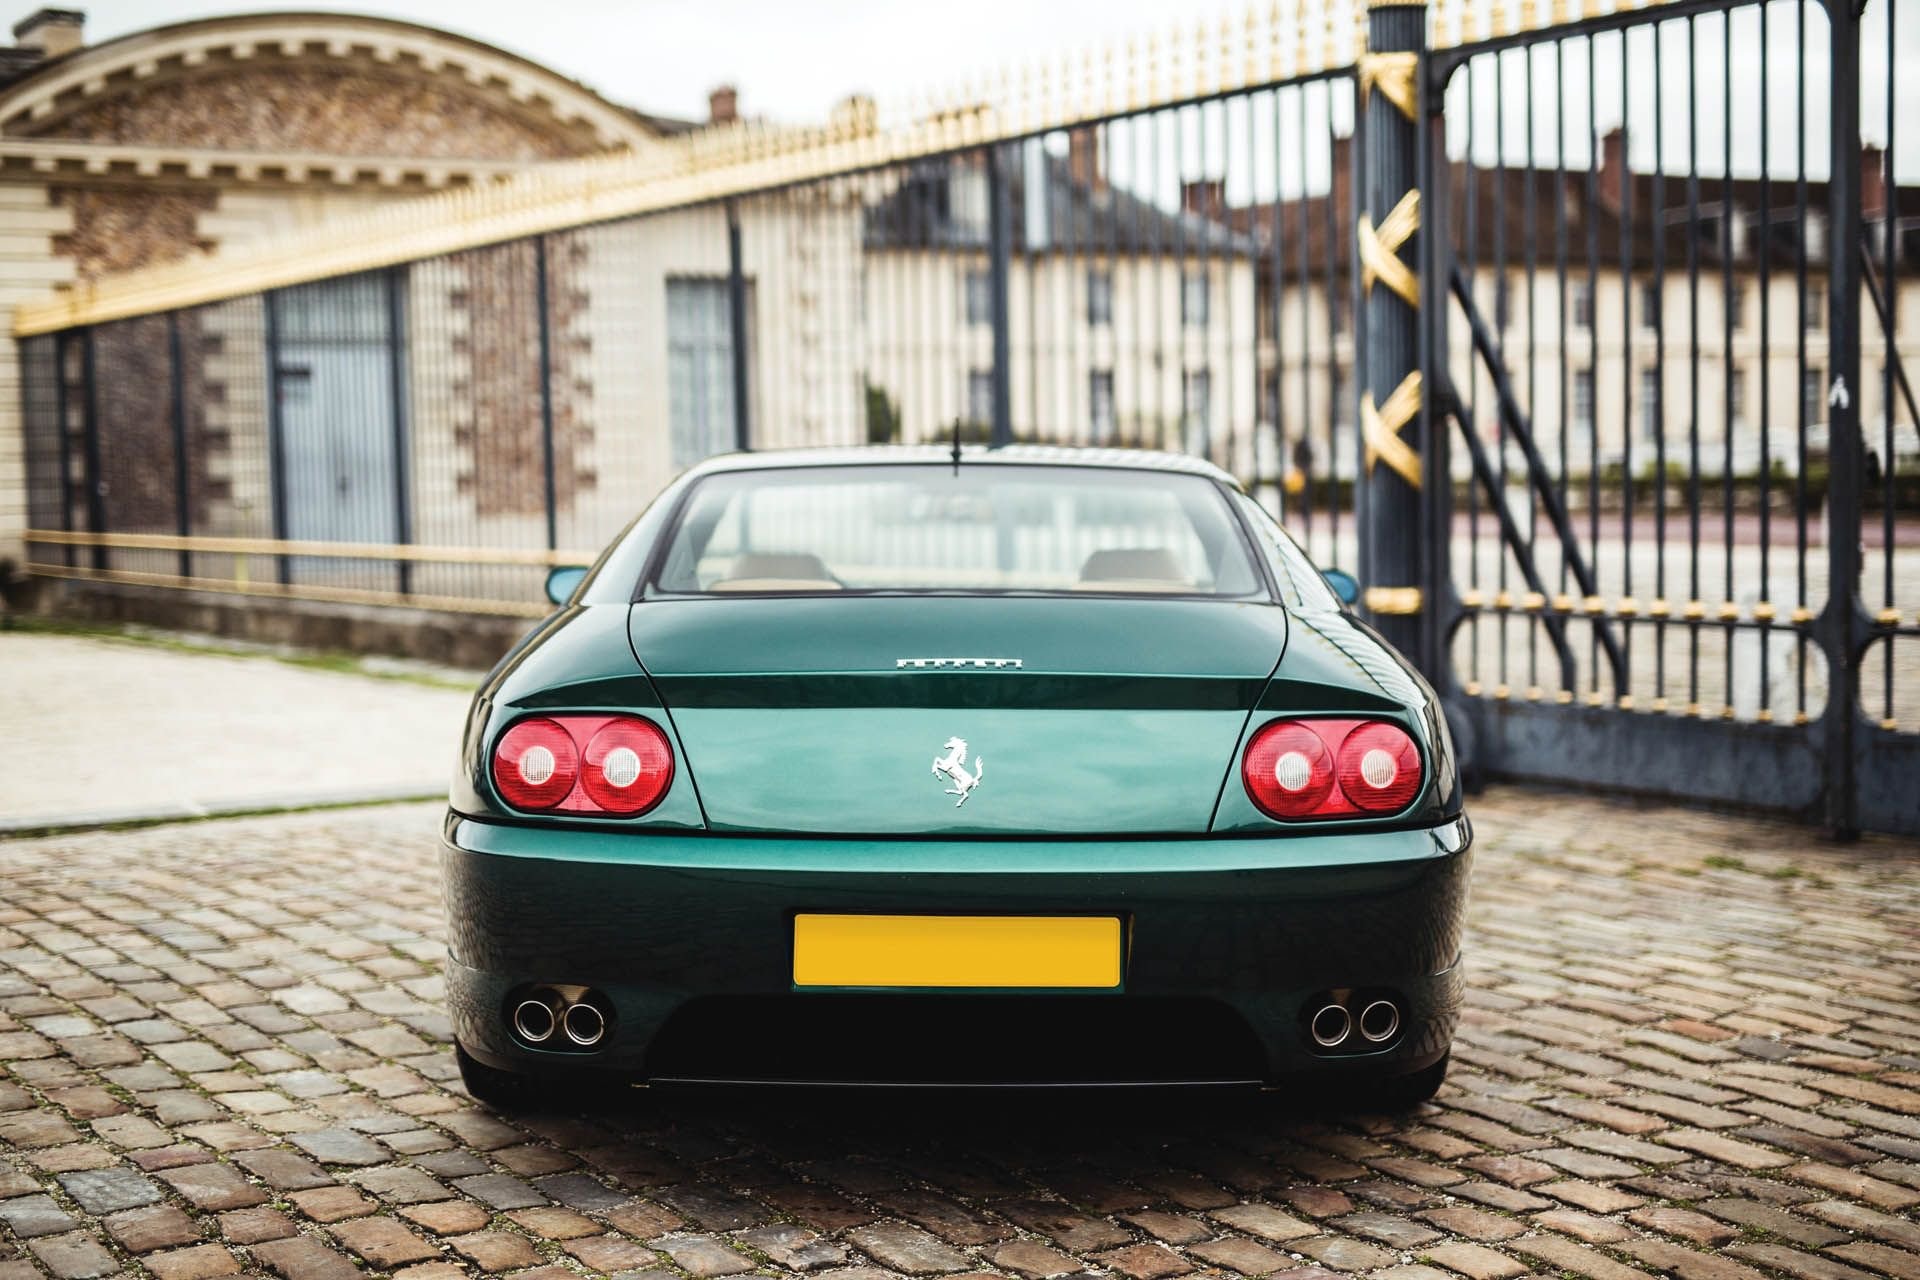 カタールの王族が所有していた1995年製の Ferrari 456 GT がオークションに登場  世界有数の富豪が惚れ込んだ一台は意外なモデルだった？